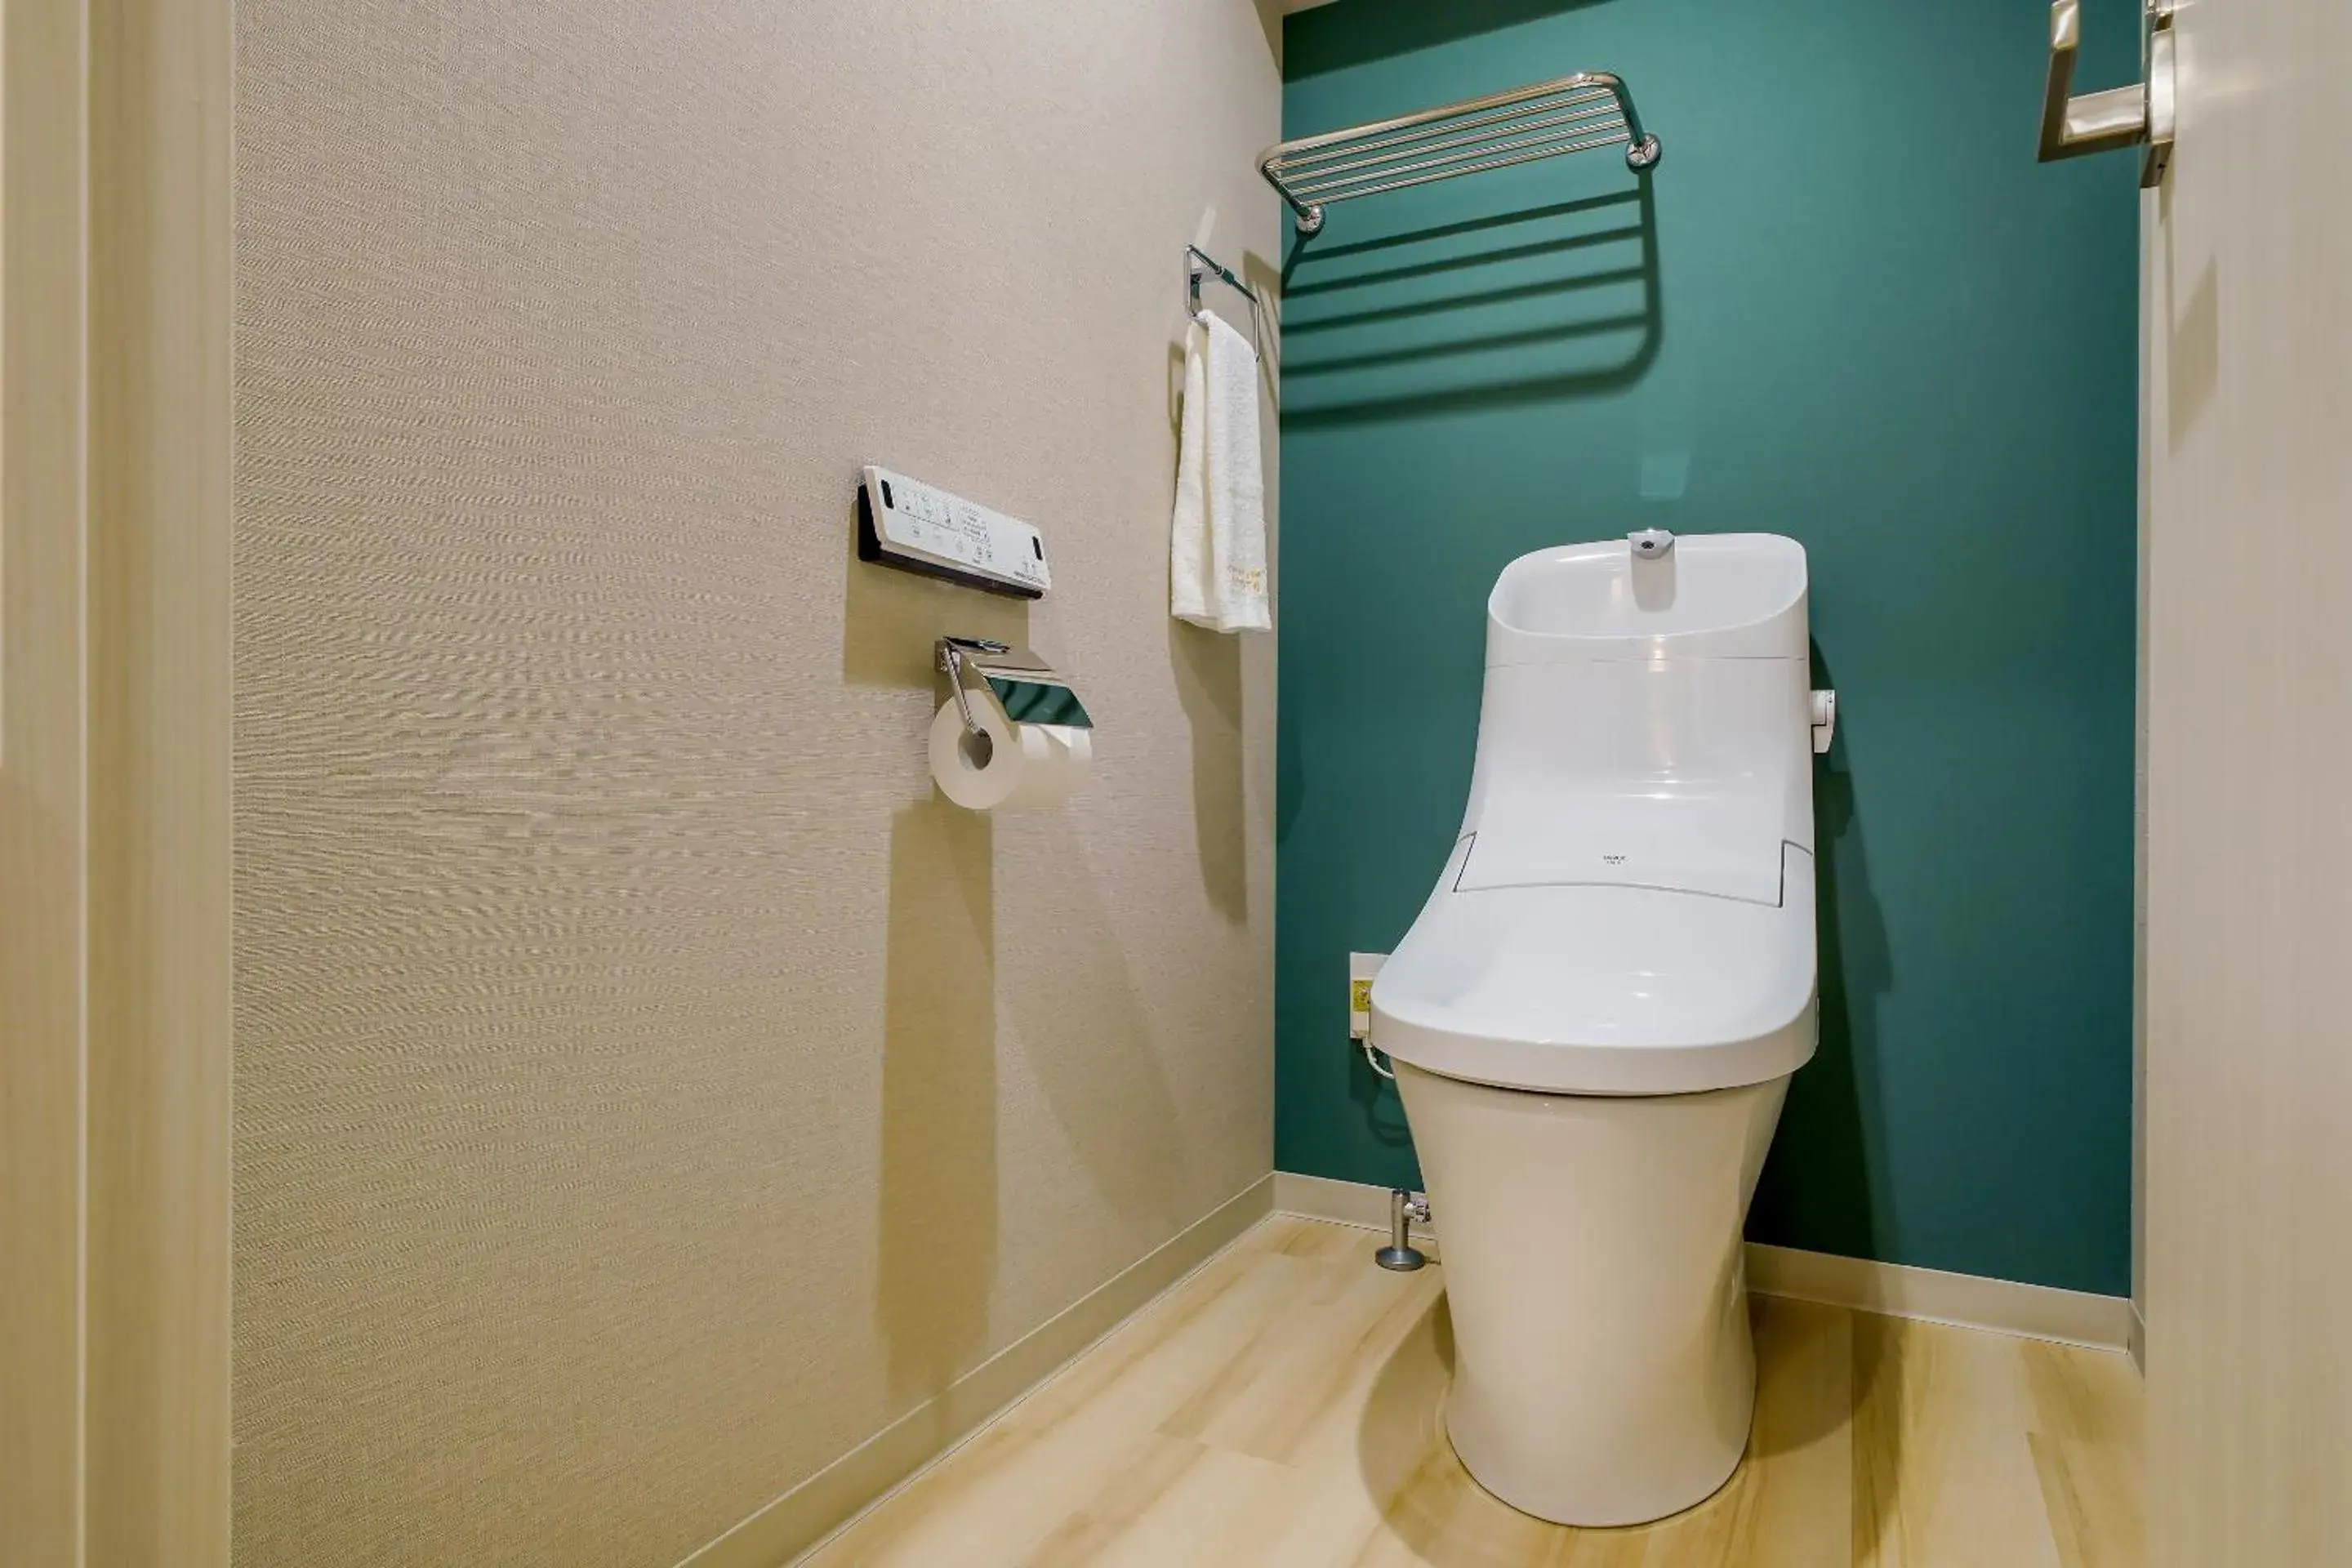 Toilet, Bathroom in RESI STAY cotorune KYOTO